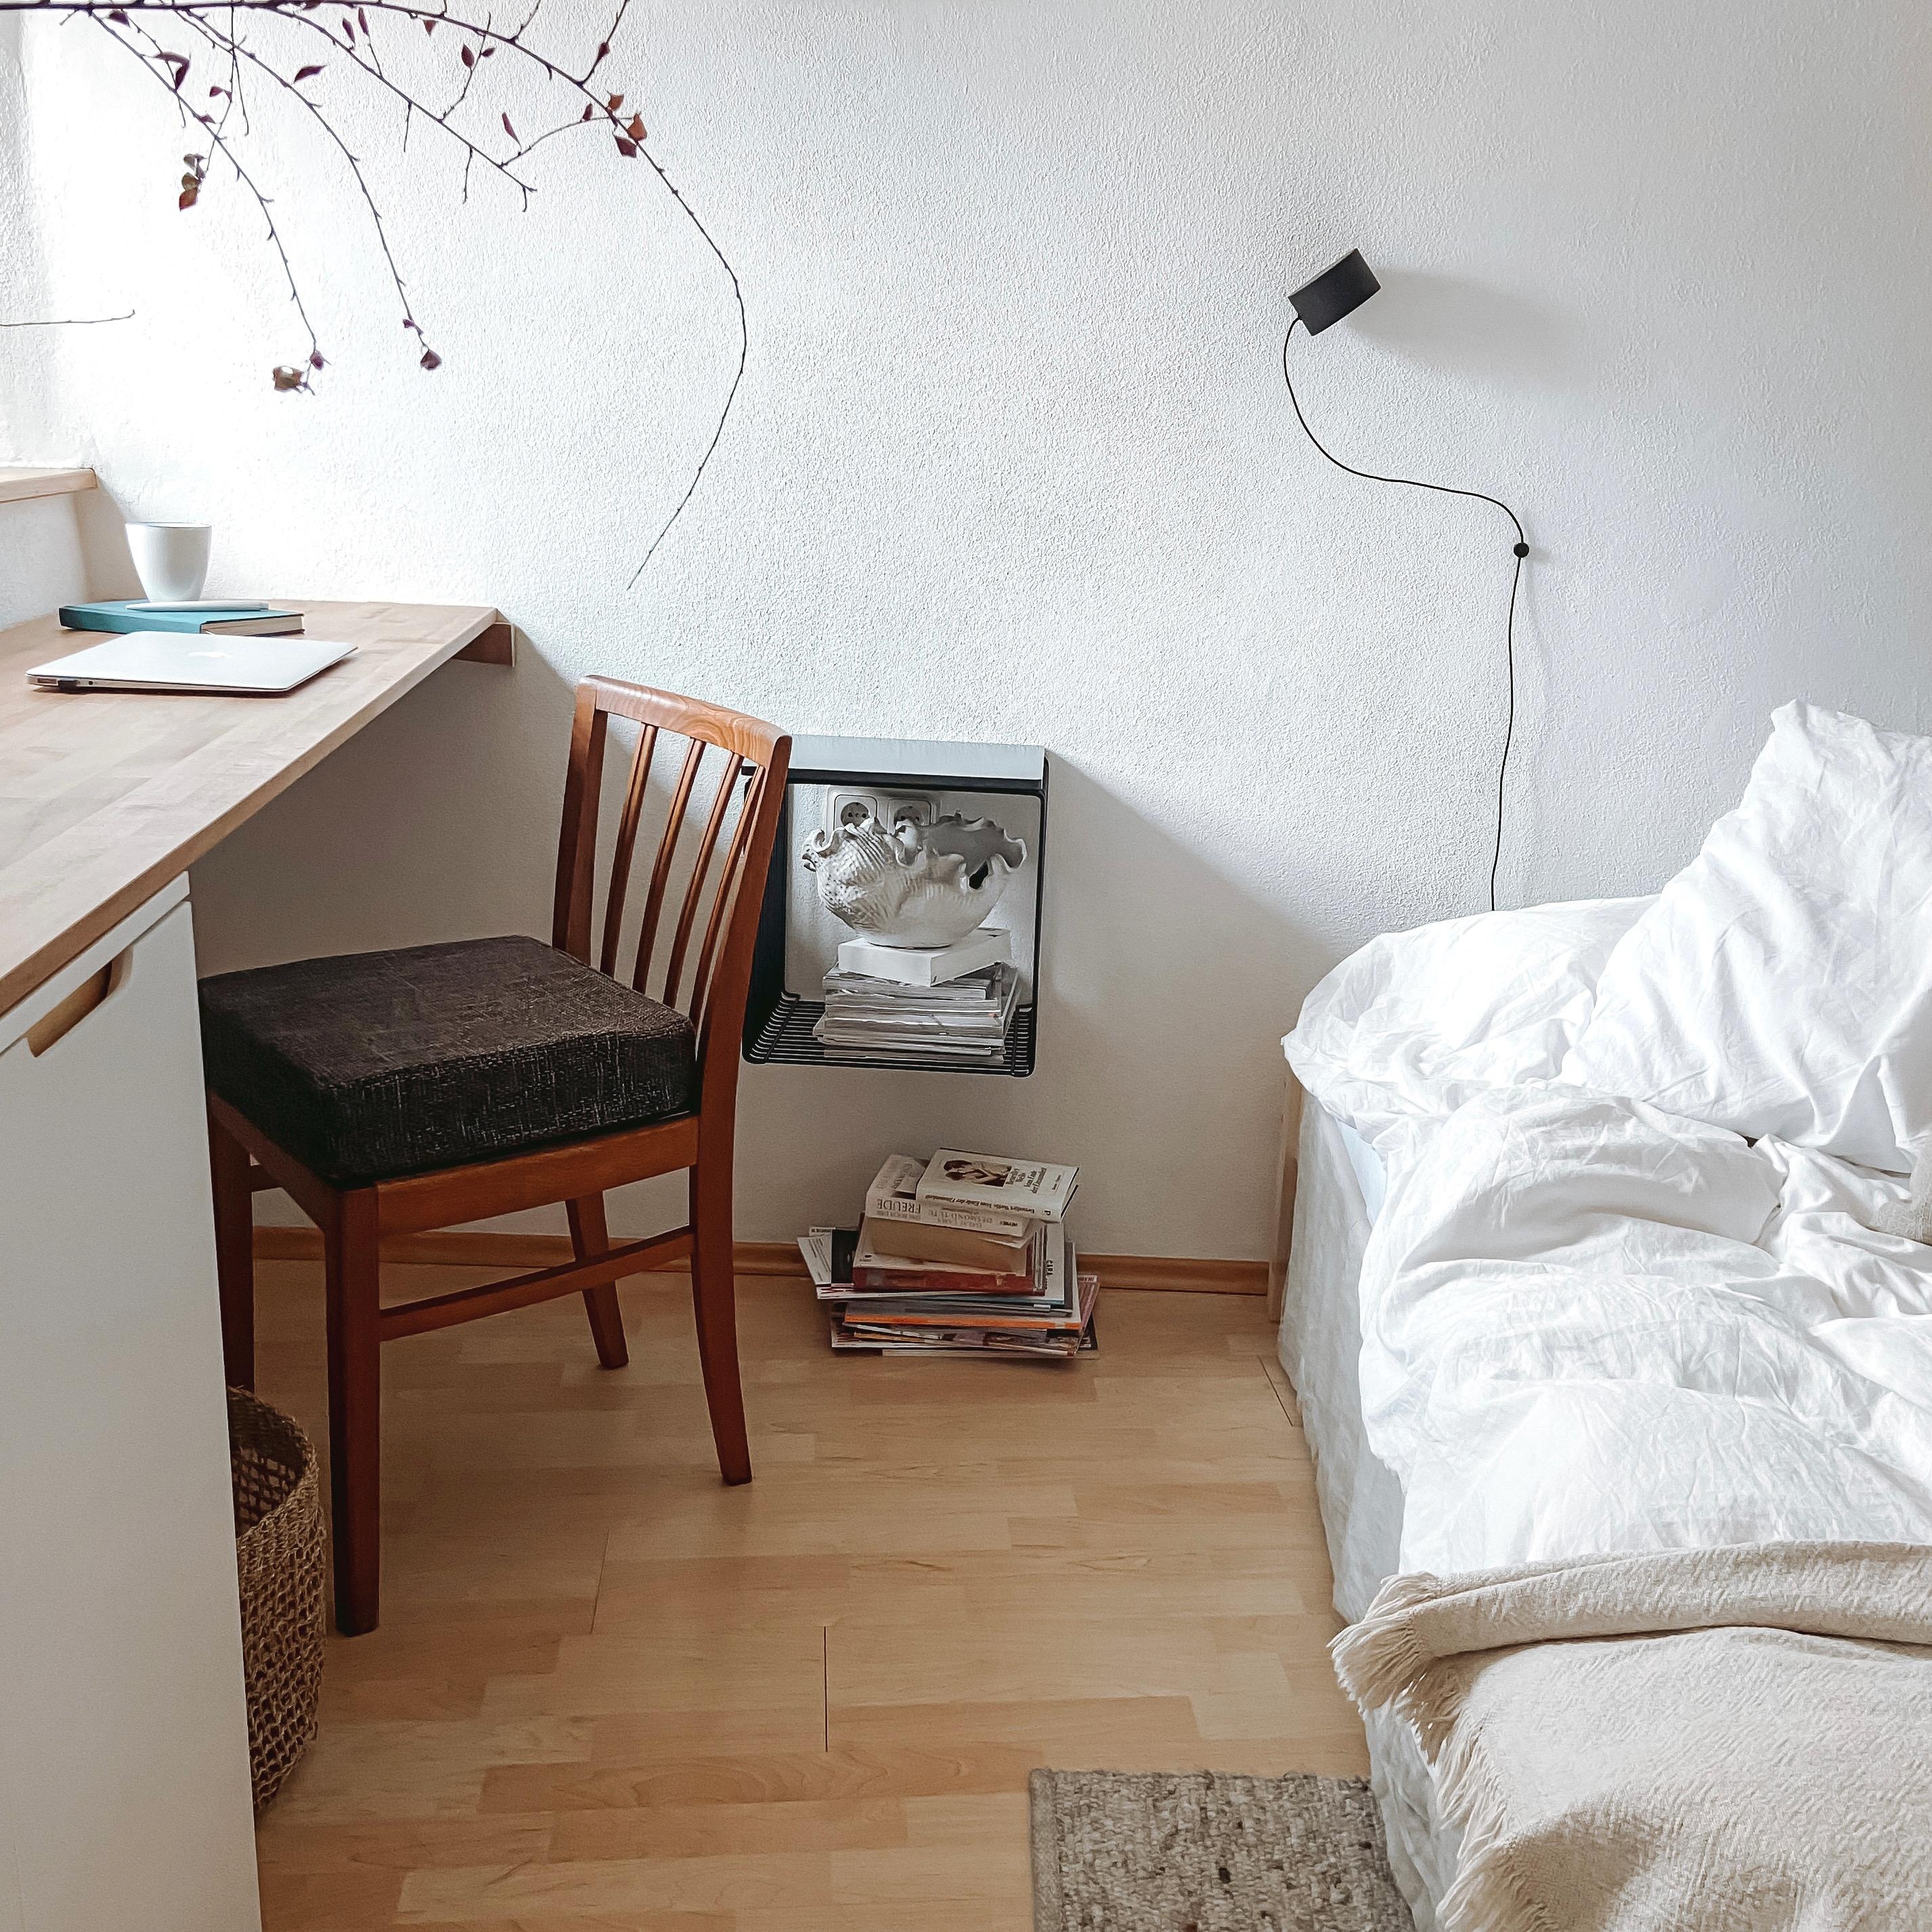 Homeoffice at it's best 
#minimaldesign #schlafzimmer #büro #natürlich